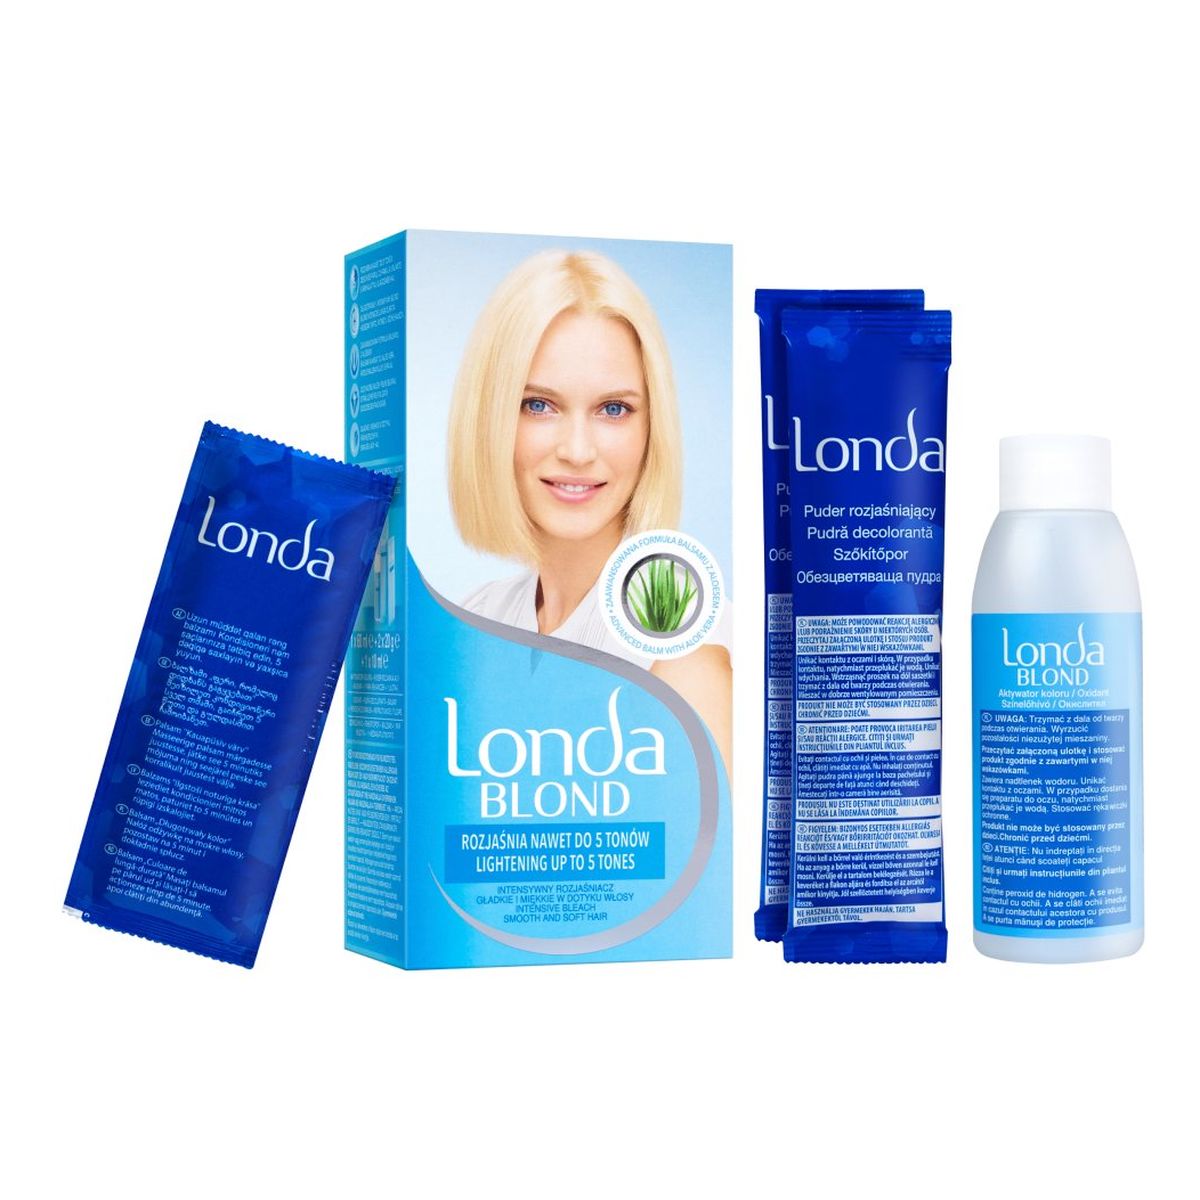 Londa Professional Blond Rozjaśniacz zapewniający równomierny i intensywny kolor nawet do 5 110g